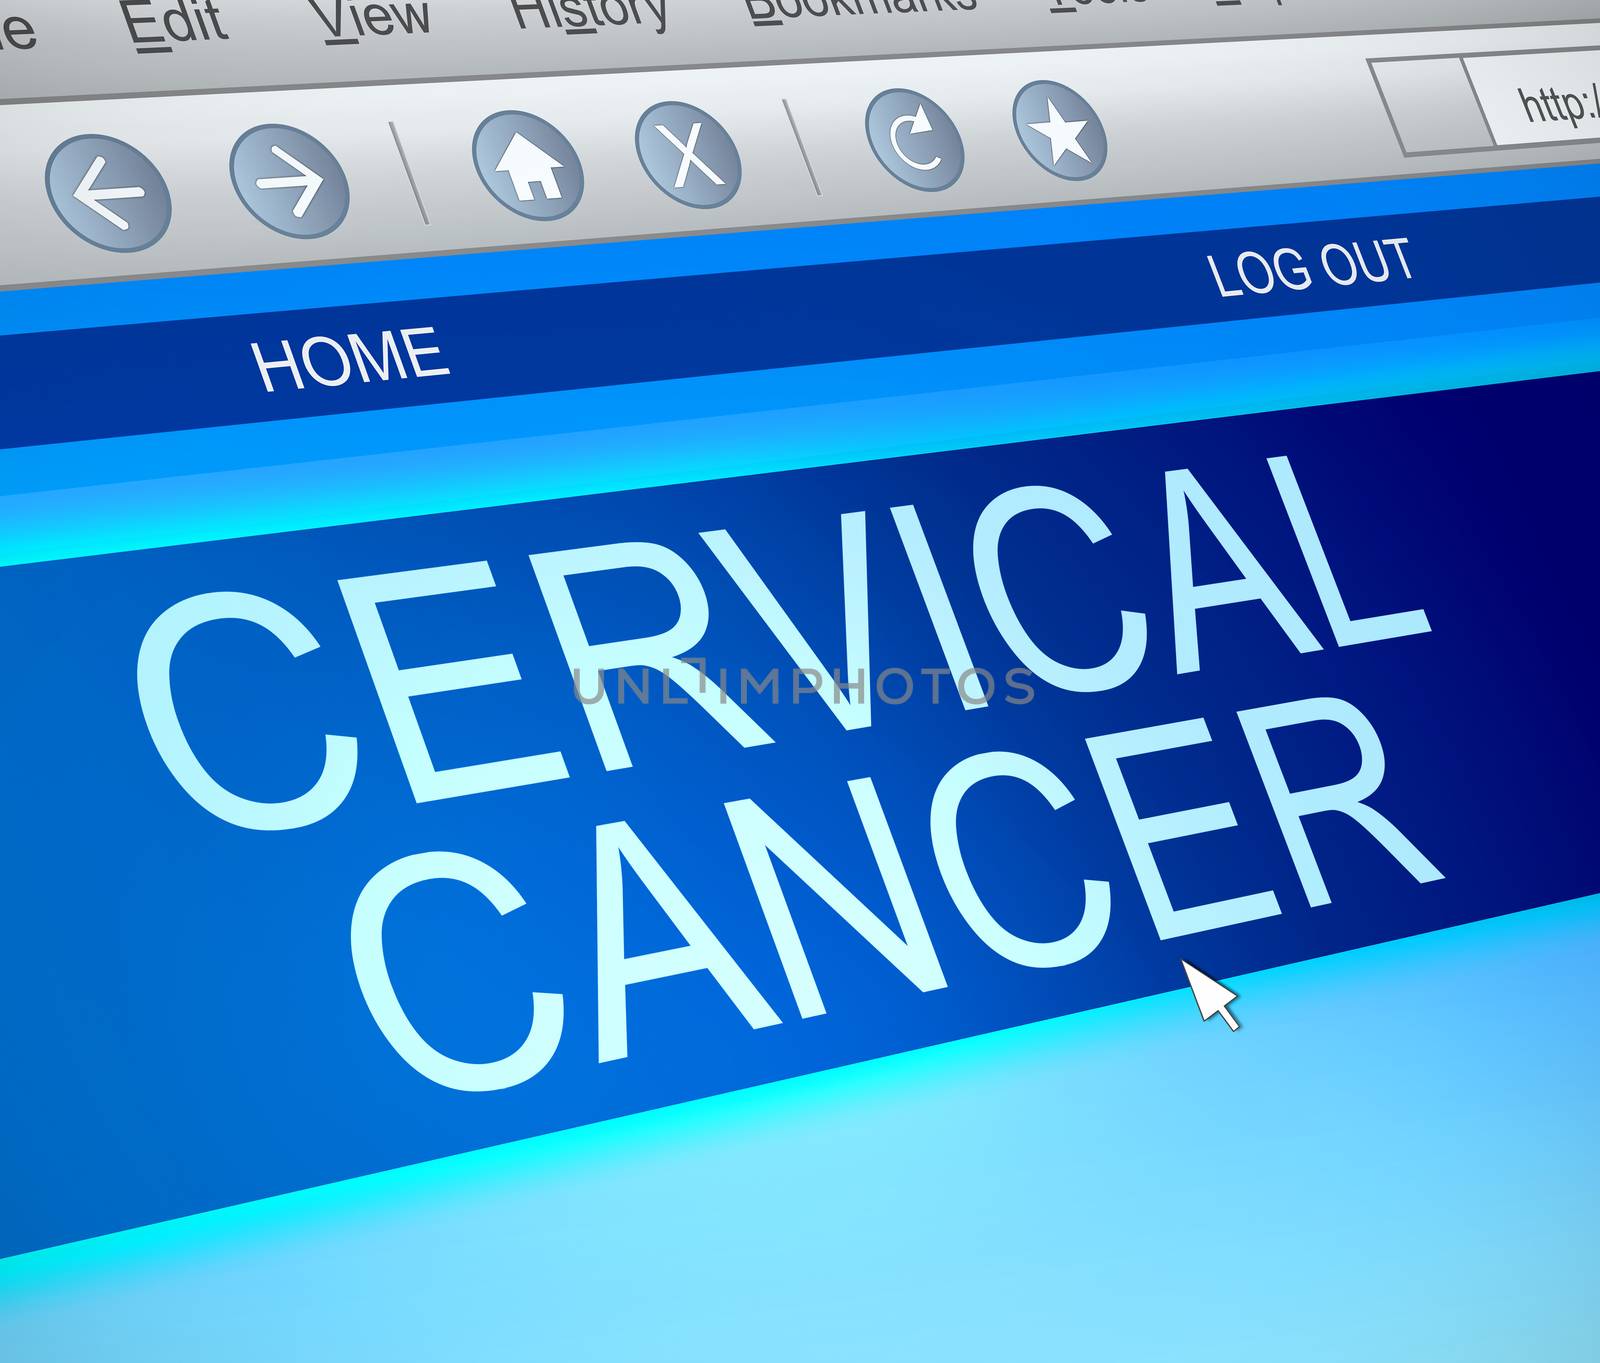 Cervical cancer information concept. by 72soul